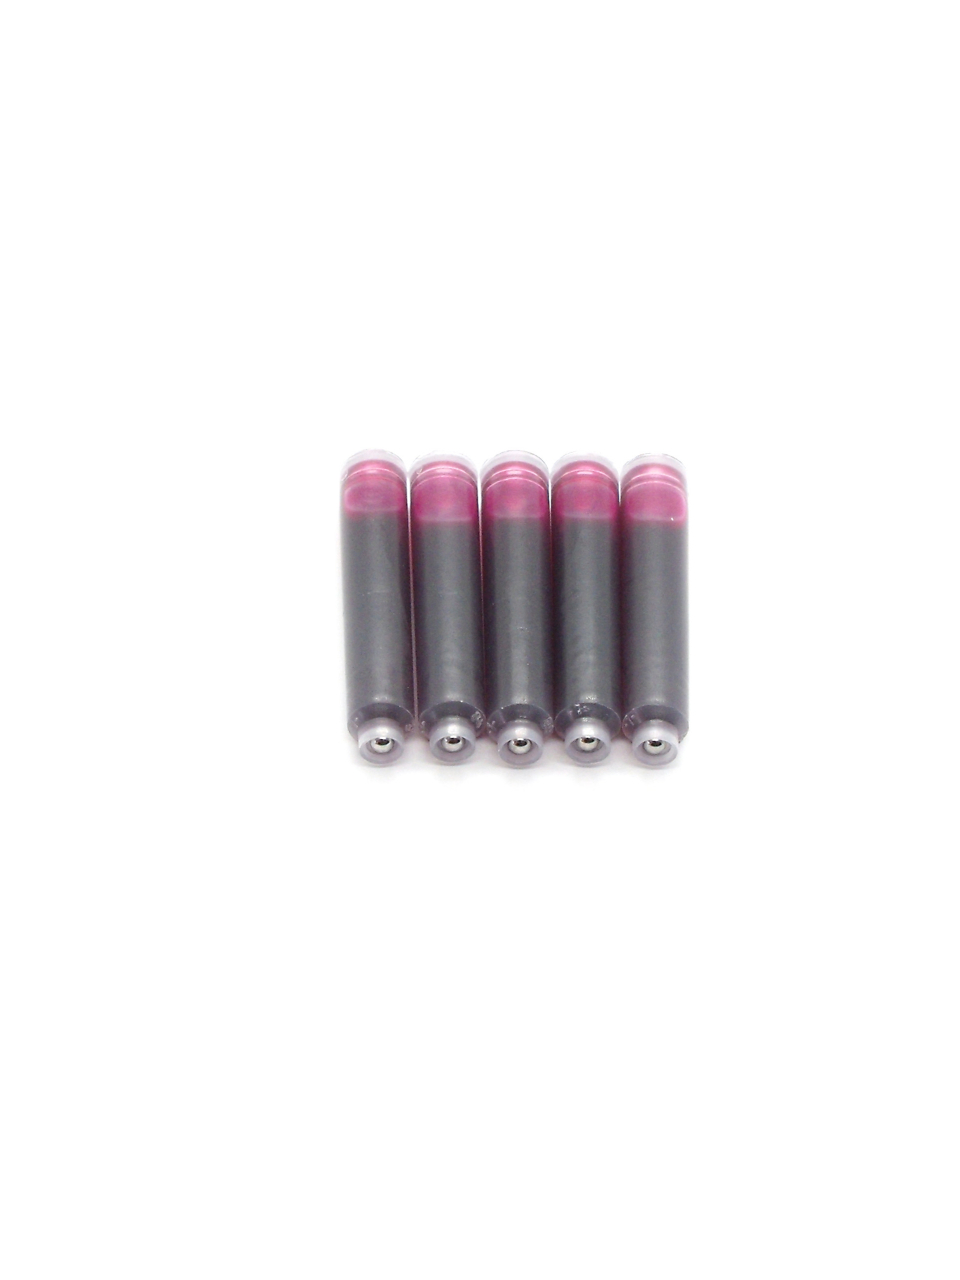 Top Ink Cartridges For Pelikan Fountain Pens (Pink)